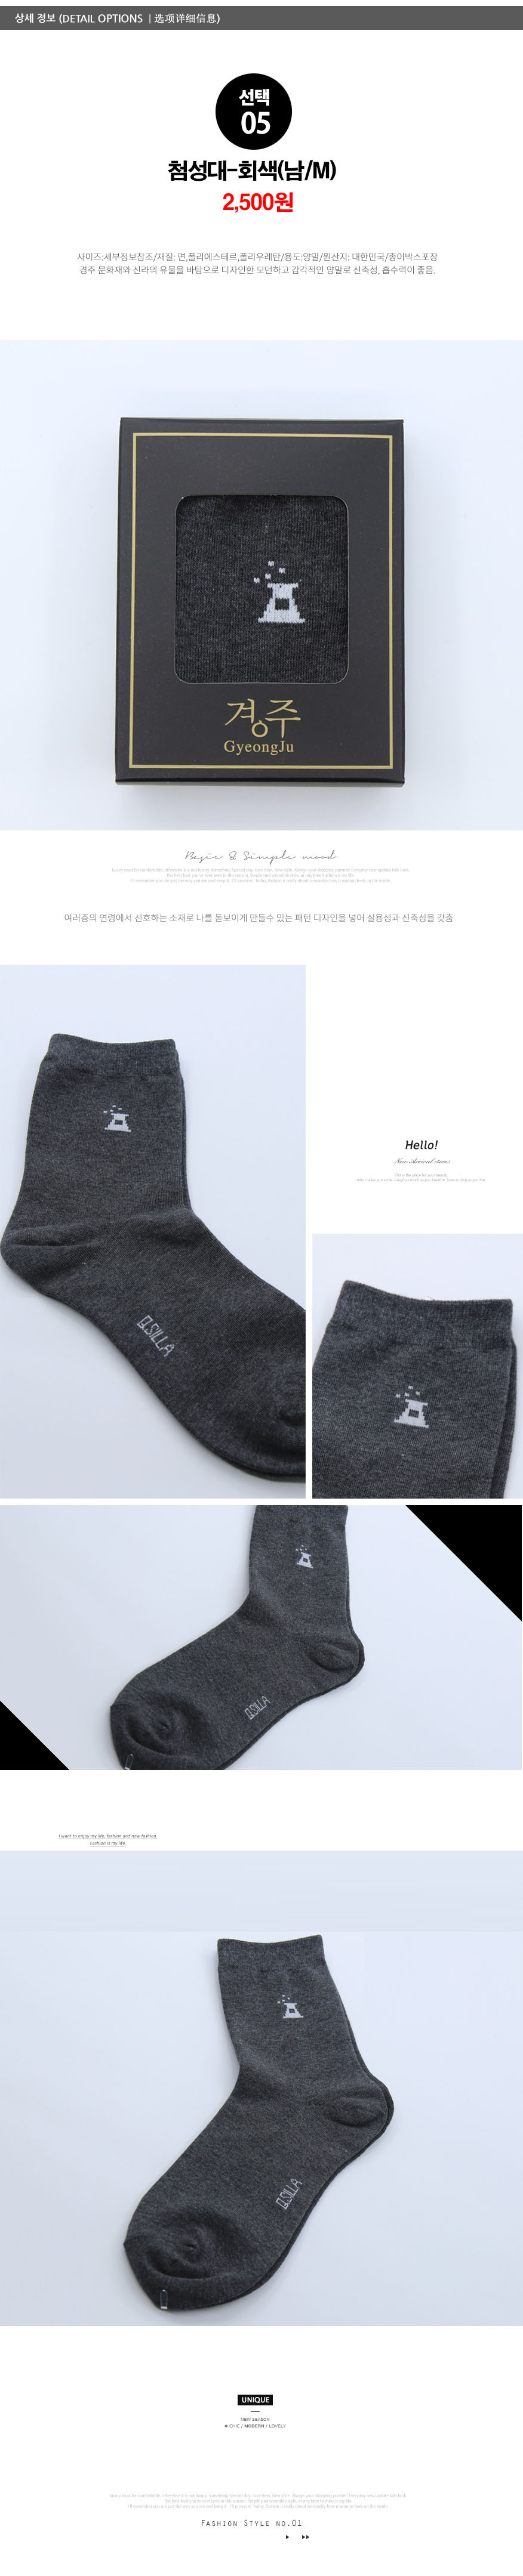 socks_05.jpg